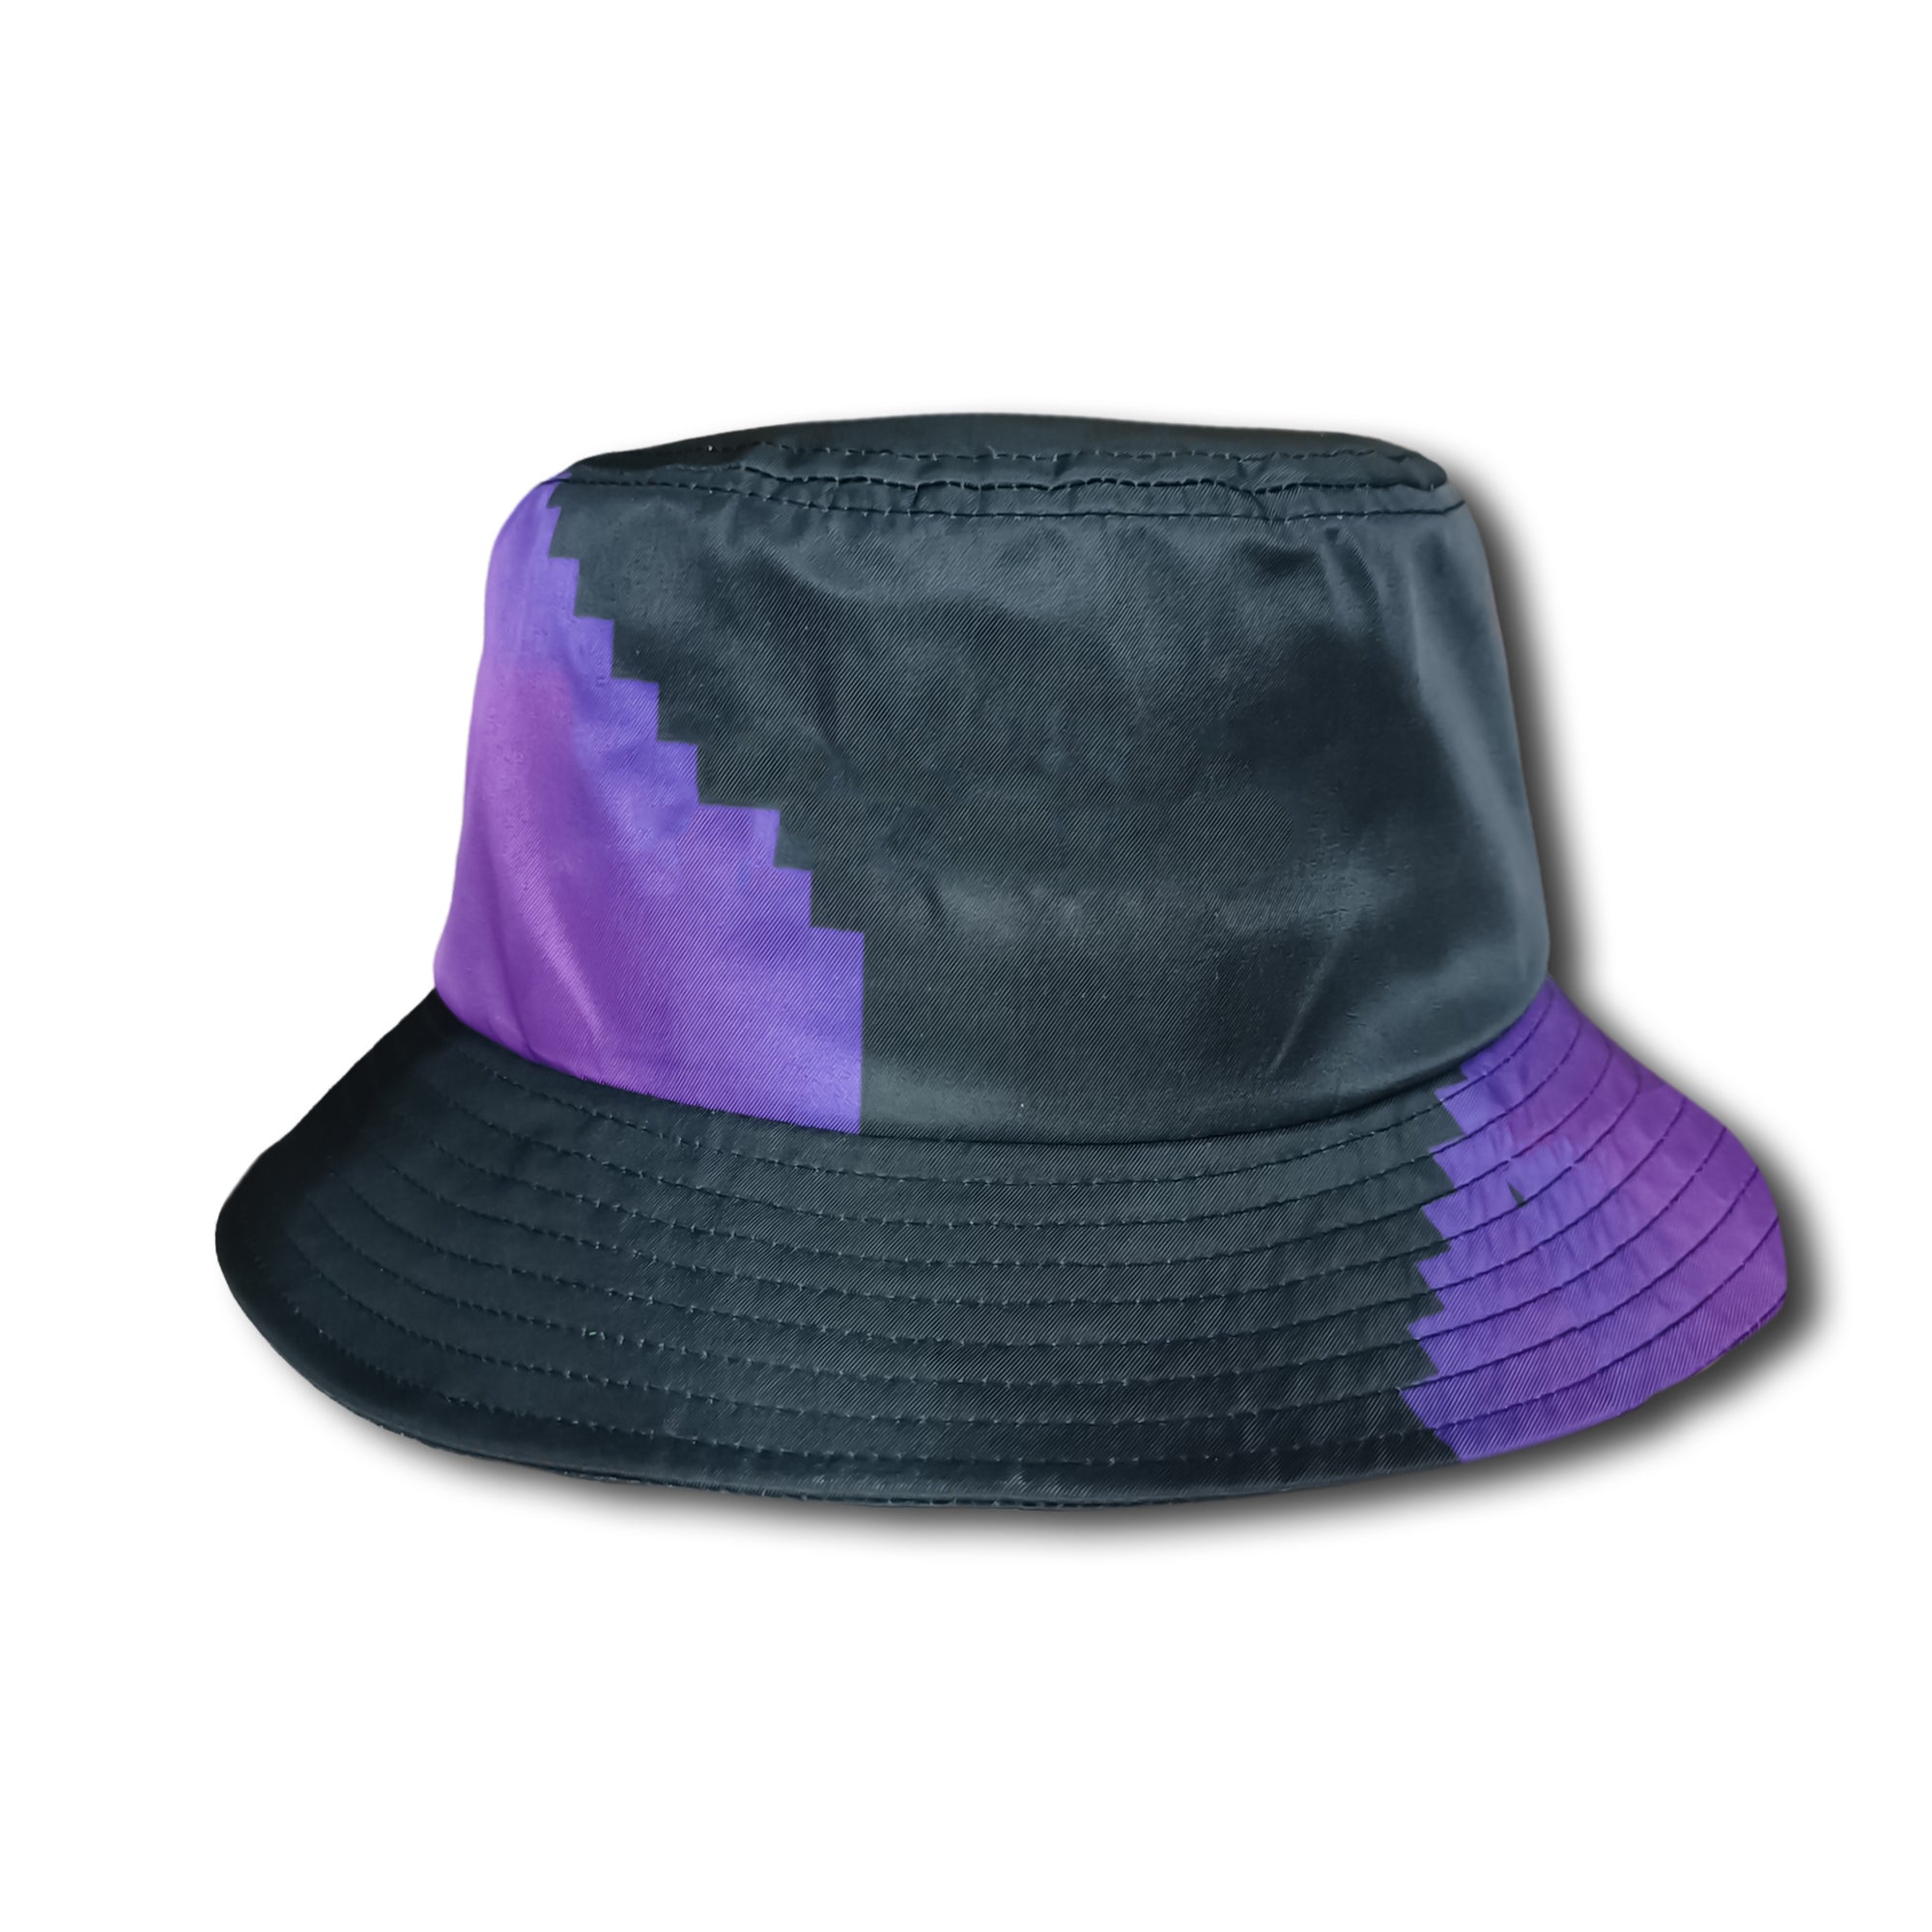 mau5trap - bucket hat